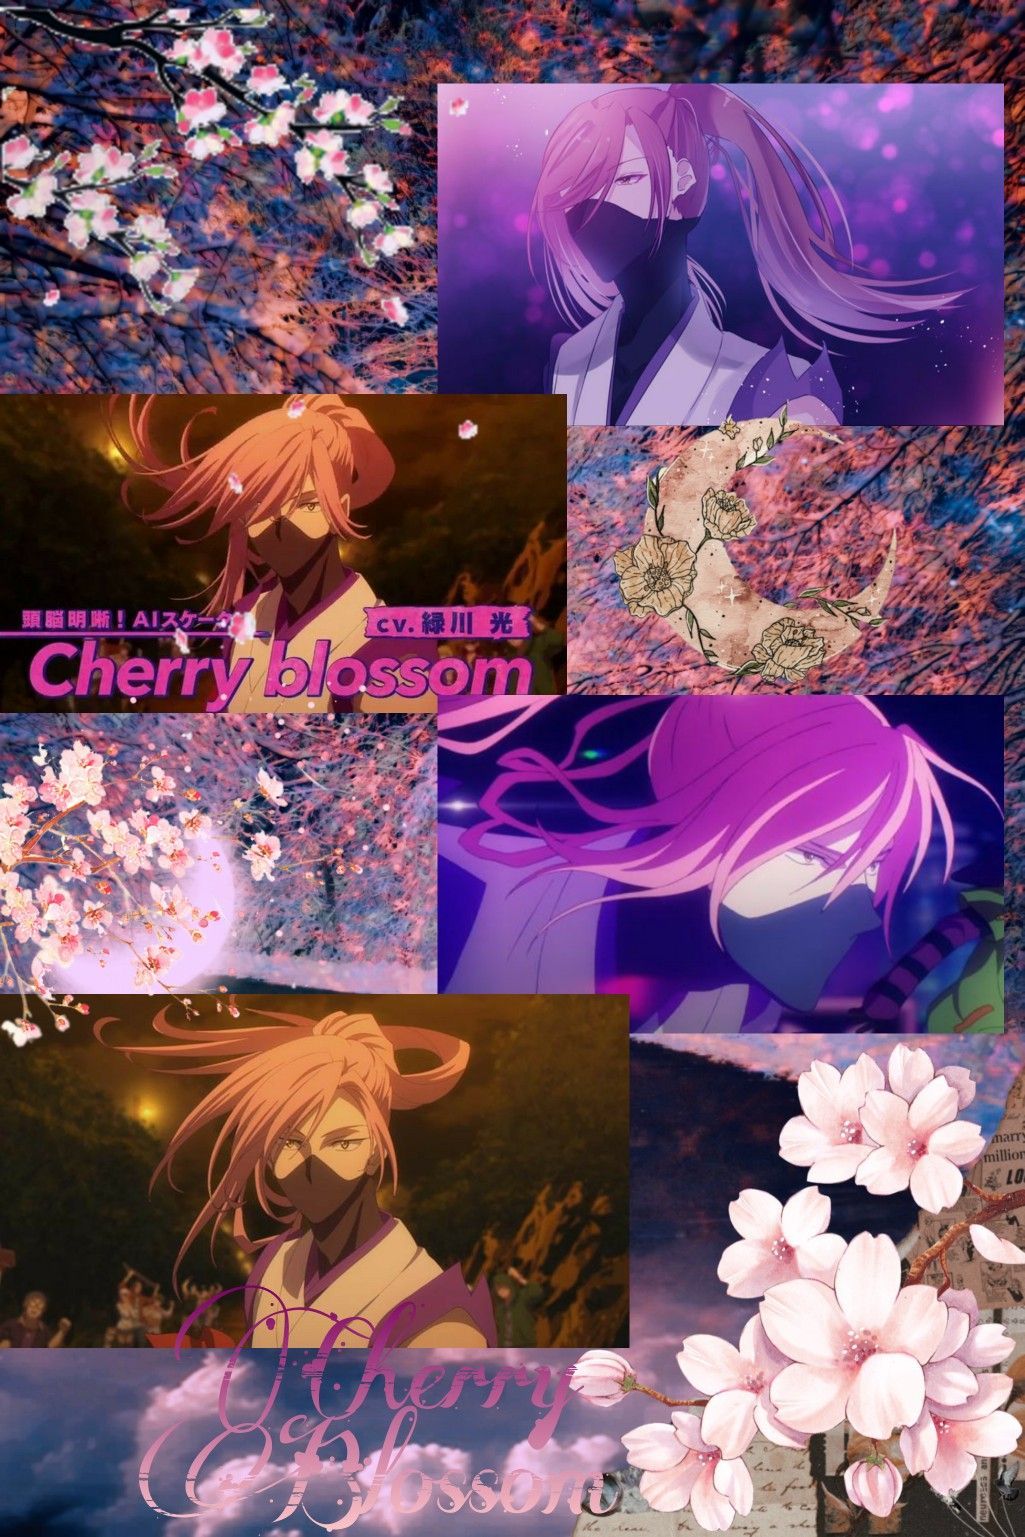 Cherry Blossom wallpaper. Cherry blossom wallpaper, Anime wallpaper, Cool anime wallpaper